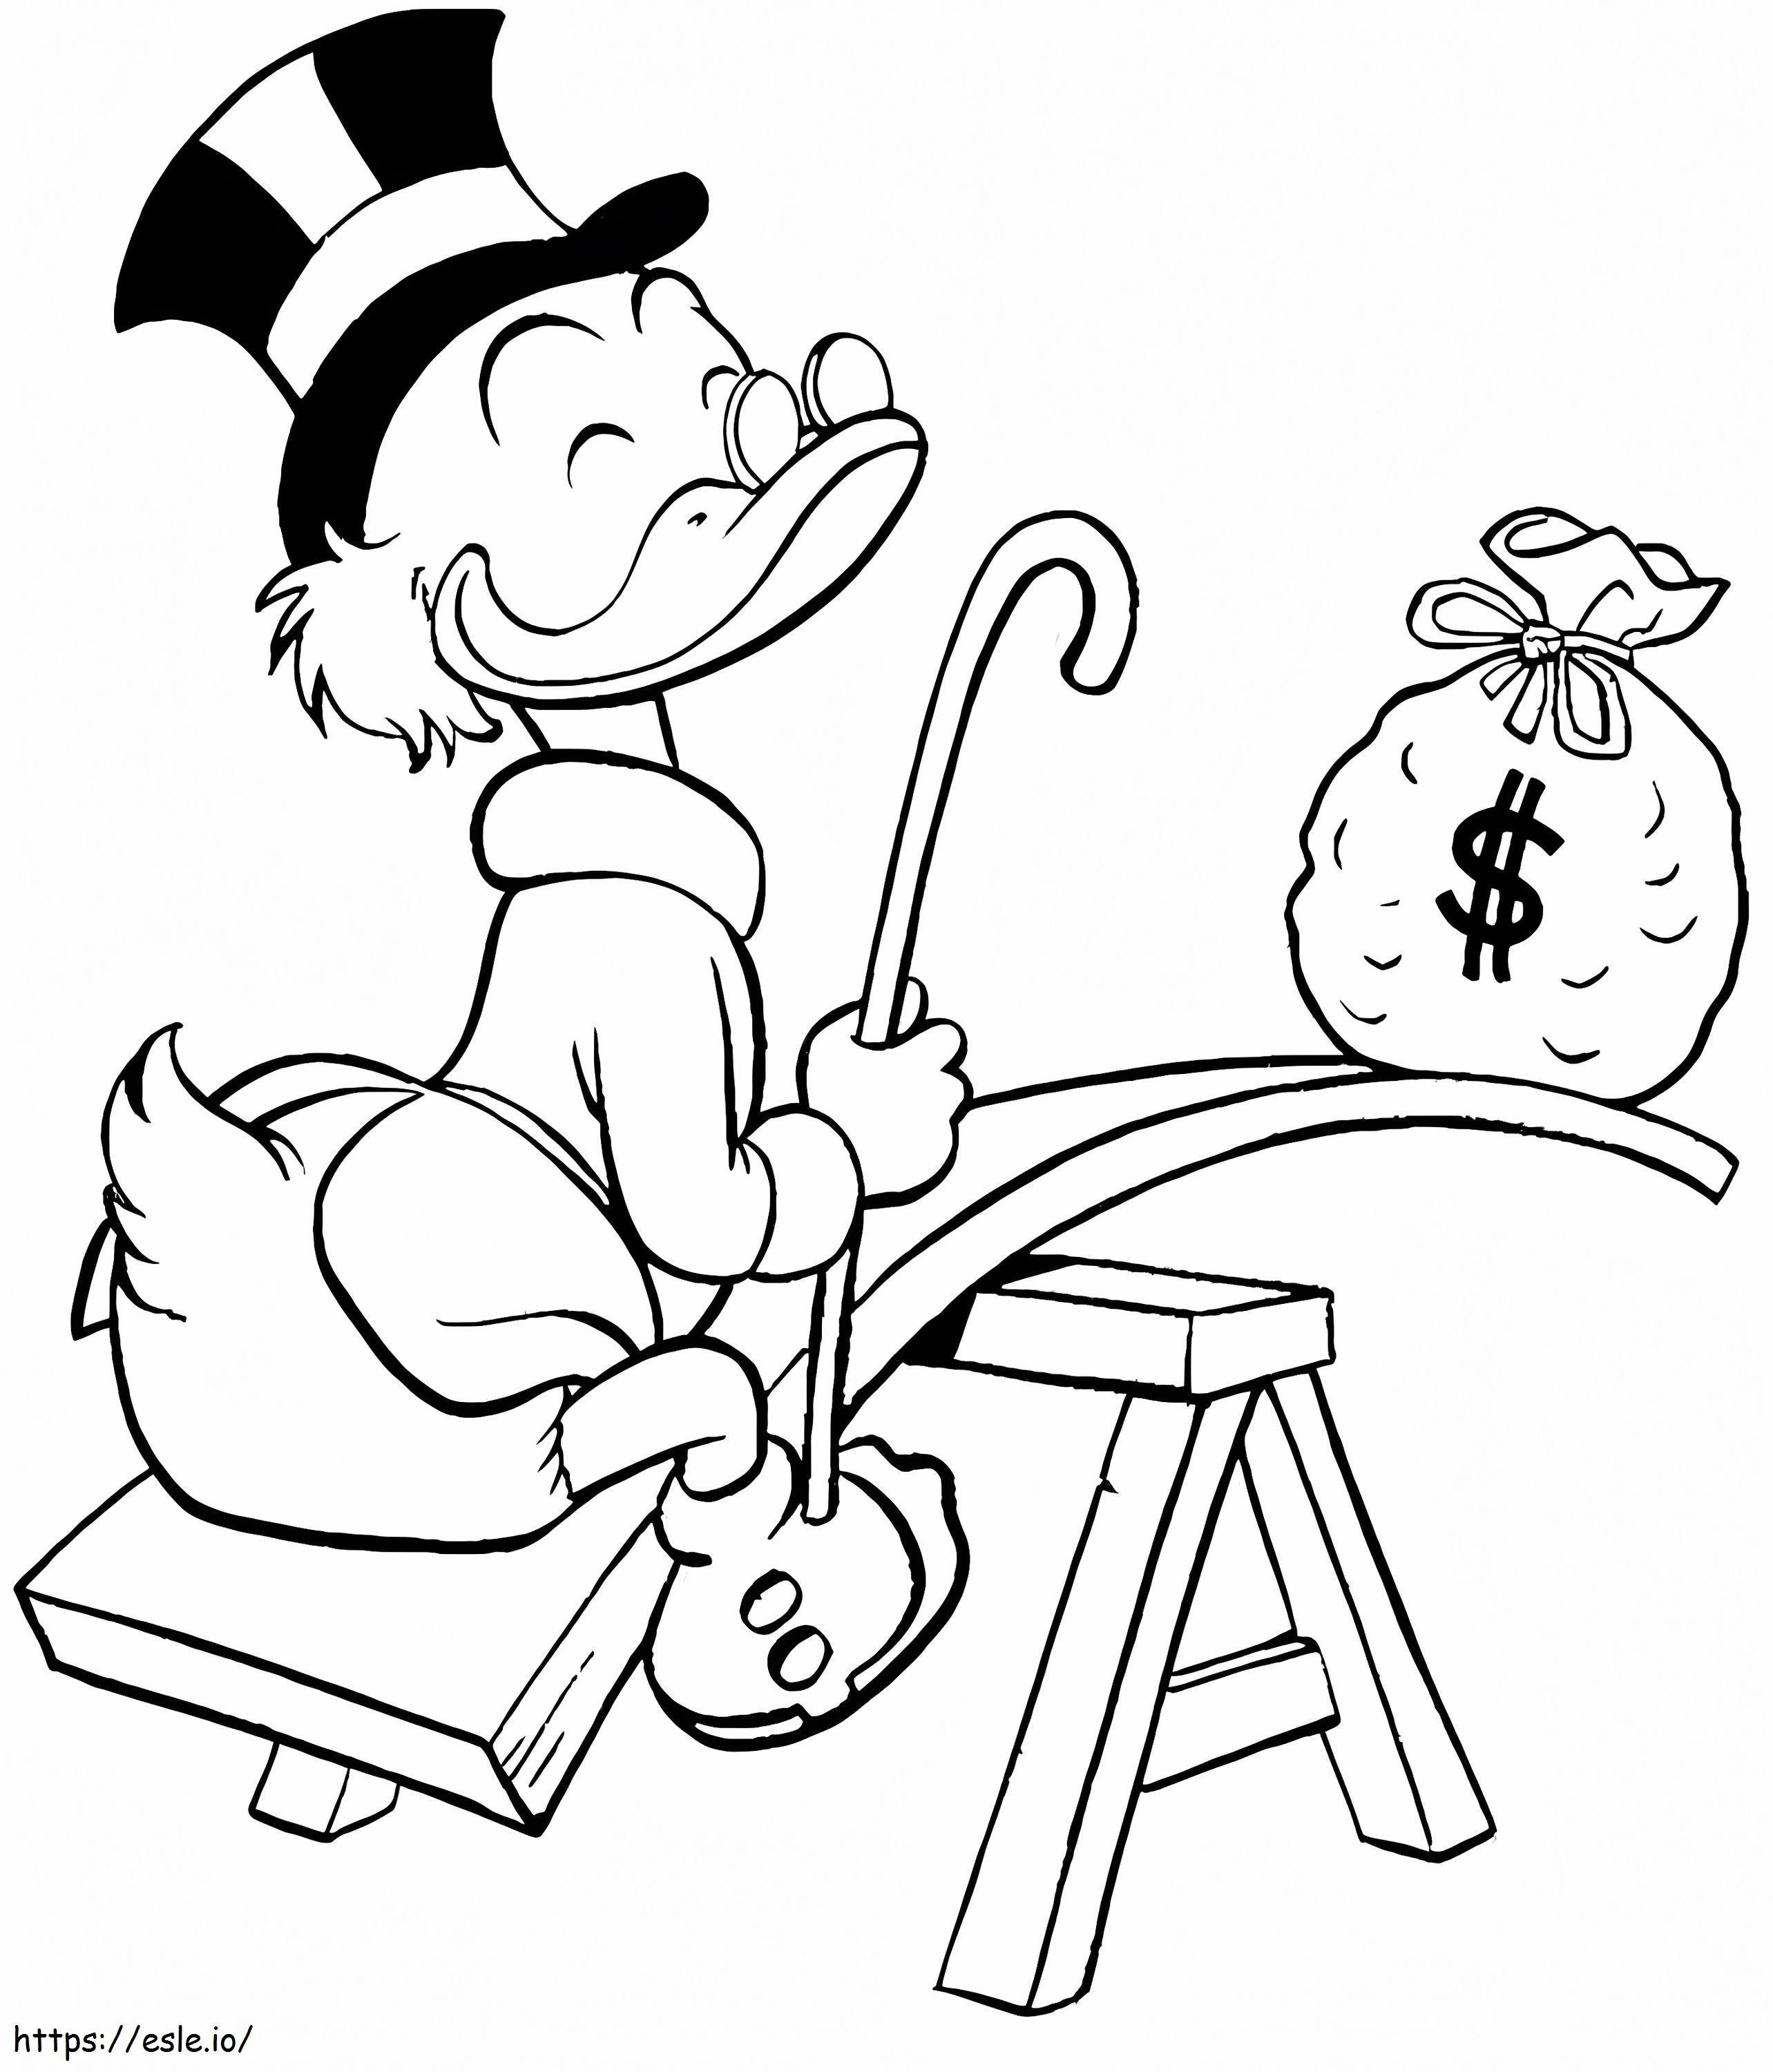 Scrooge McDuck z pieniędzmi kolorowanka